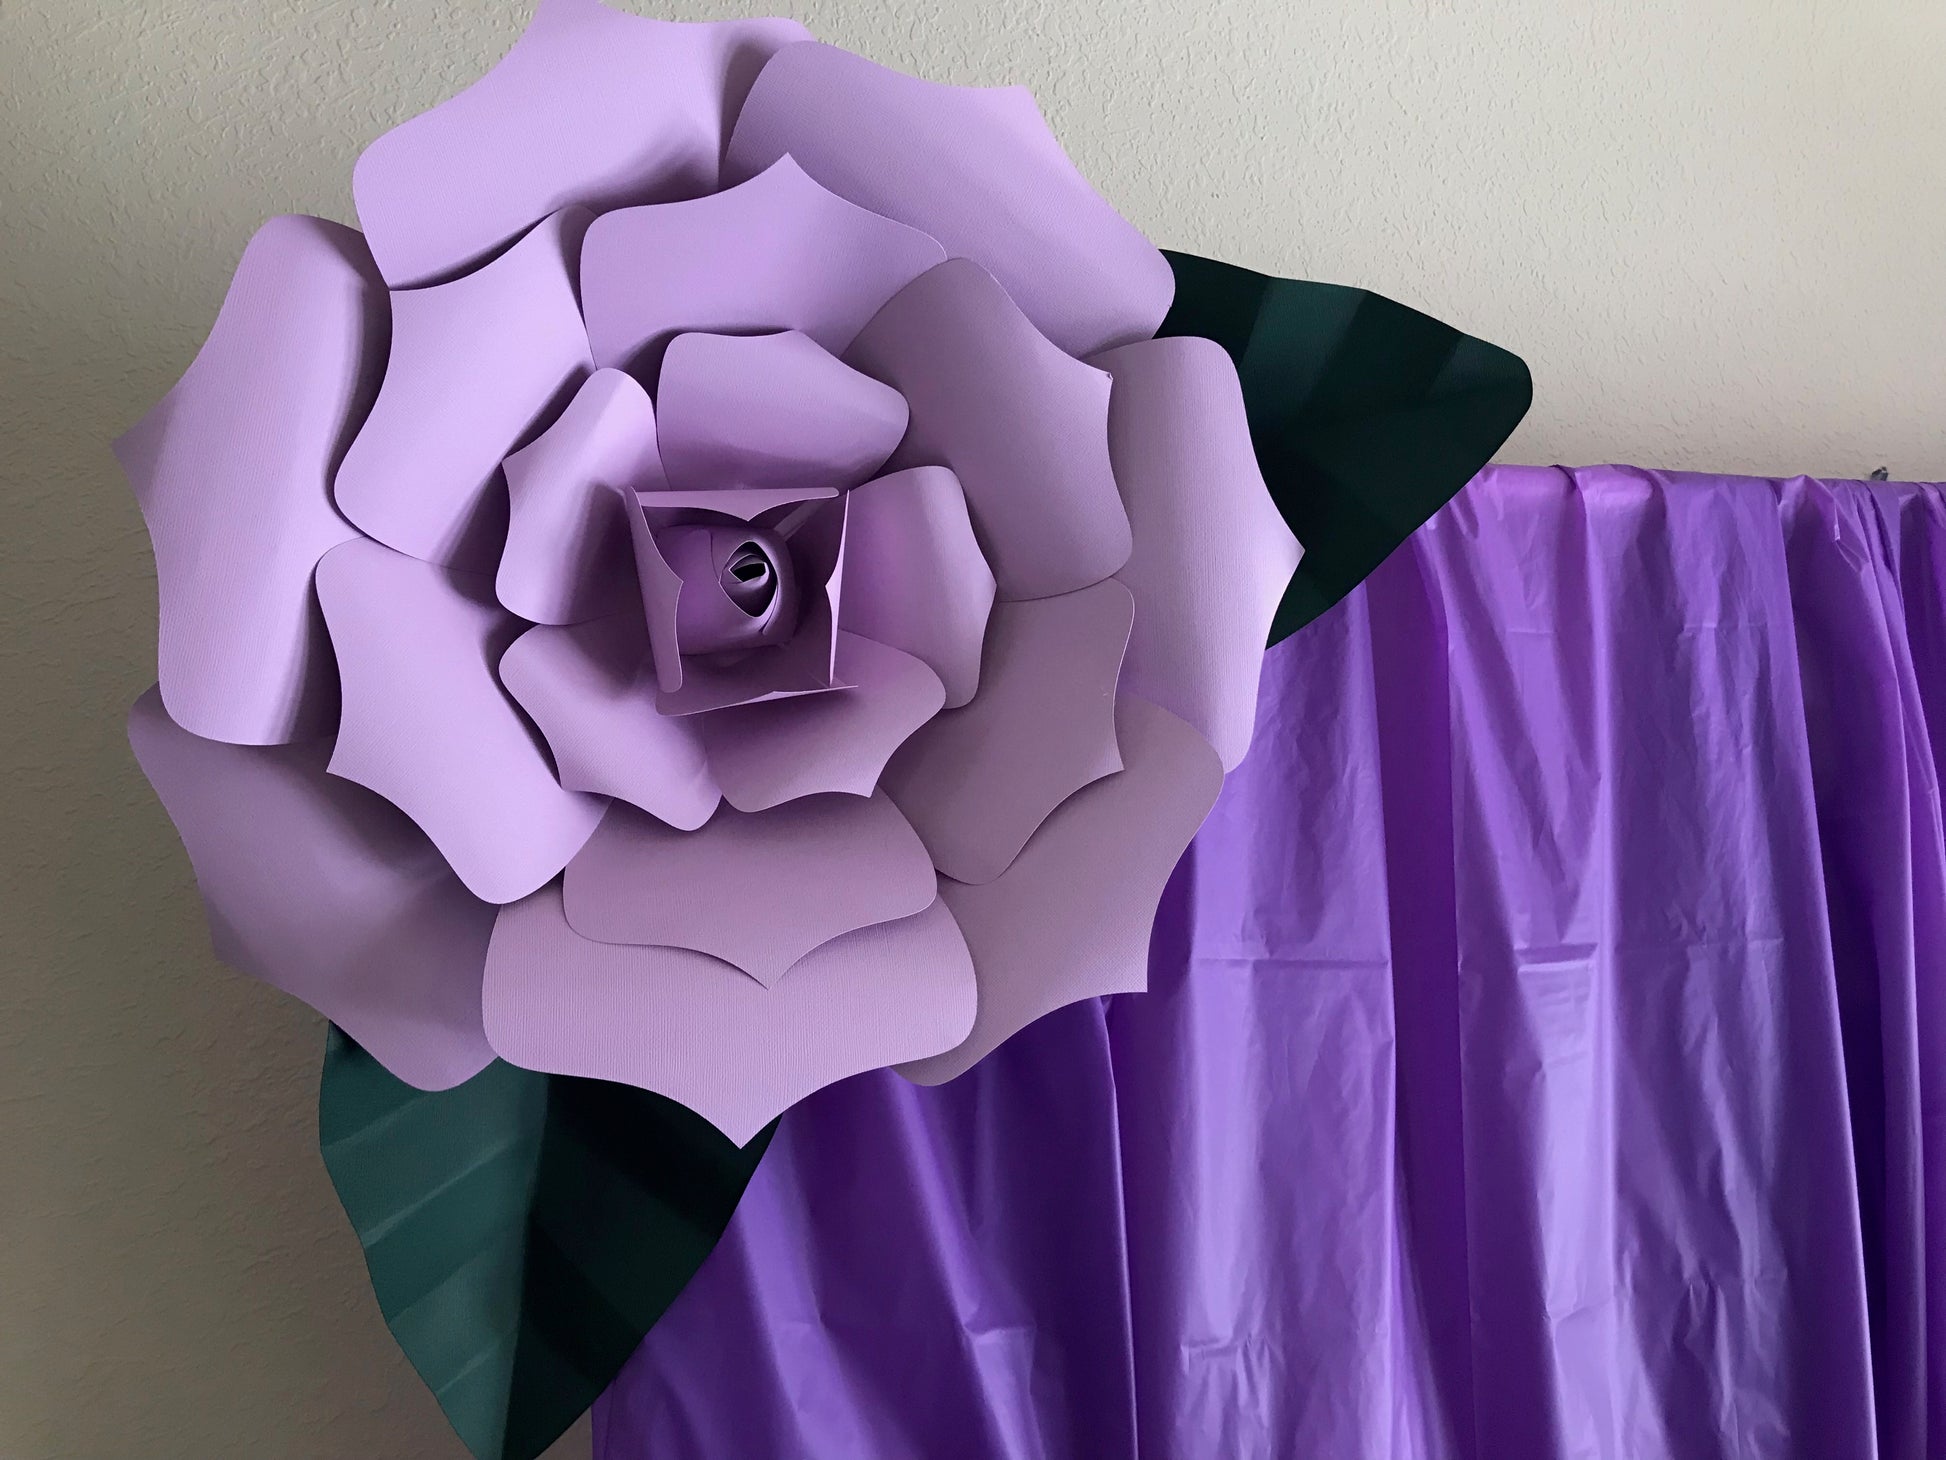 Paper Flower Kit, Paper Flowers, DIY, Paper Flower Template, Paper Flowers  Wall Decor, DIY Paper Flowers, Paper Flower Wall Decor 